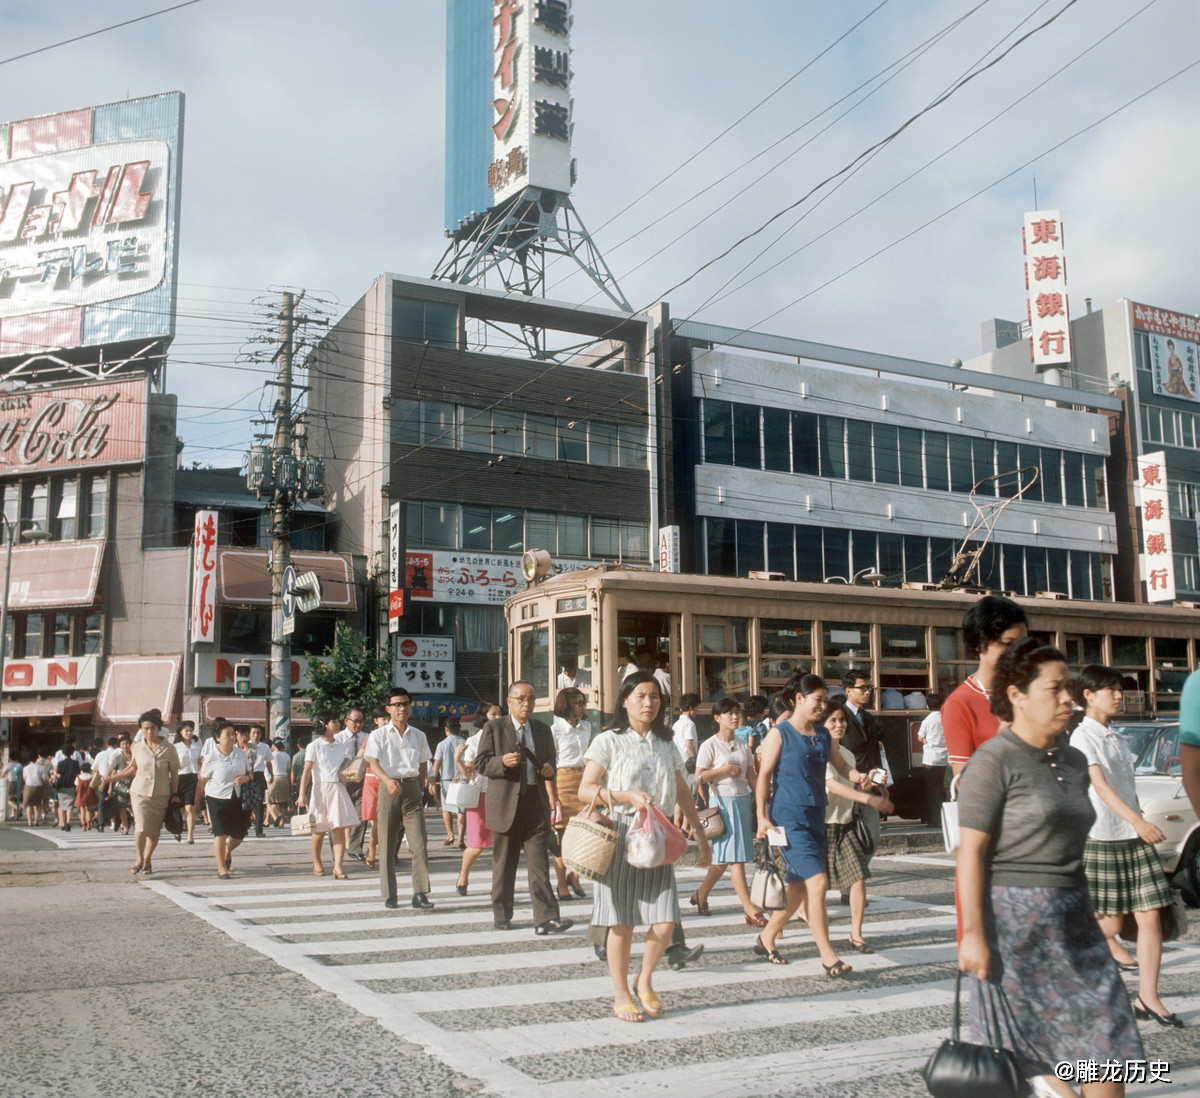 上世纪70年代的日本高楼大厦林立街道车水马龙